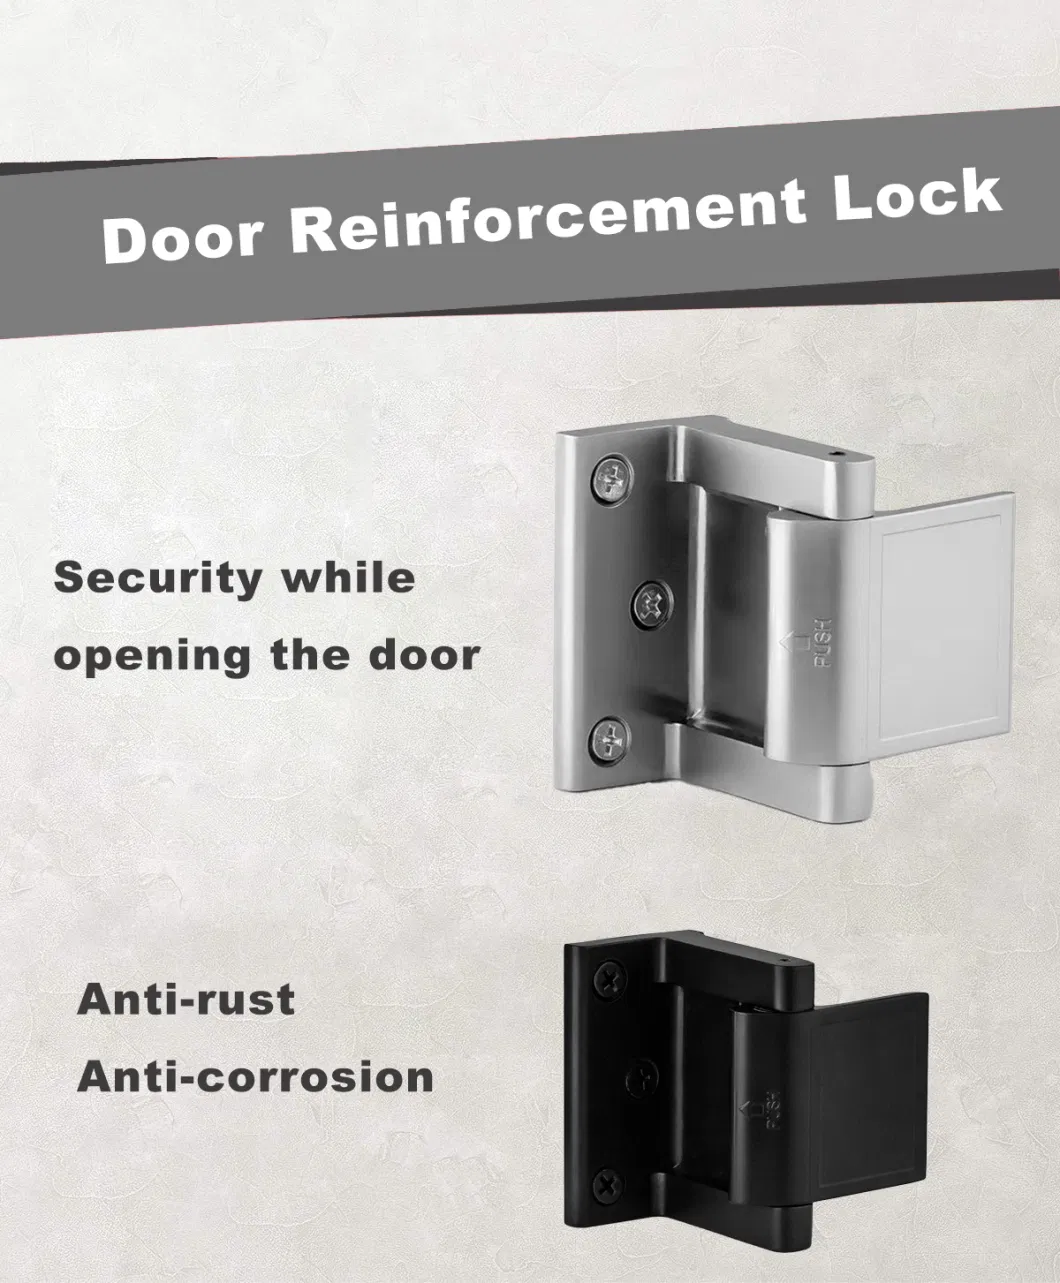 Door Security Lock Factory Hot Sale Defender Security Door Reinforcement Lock Home Security Lock for Door